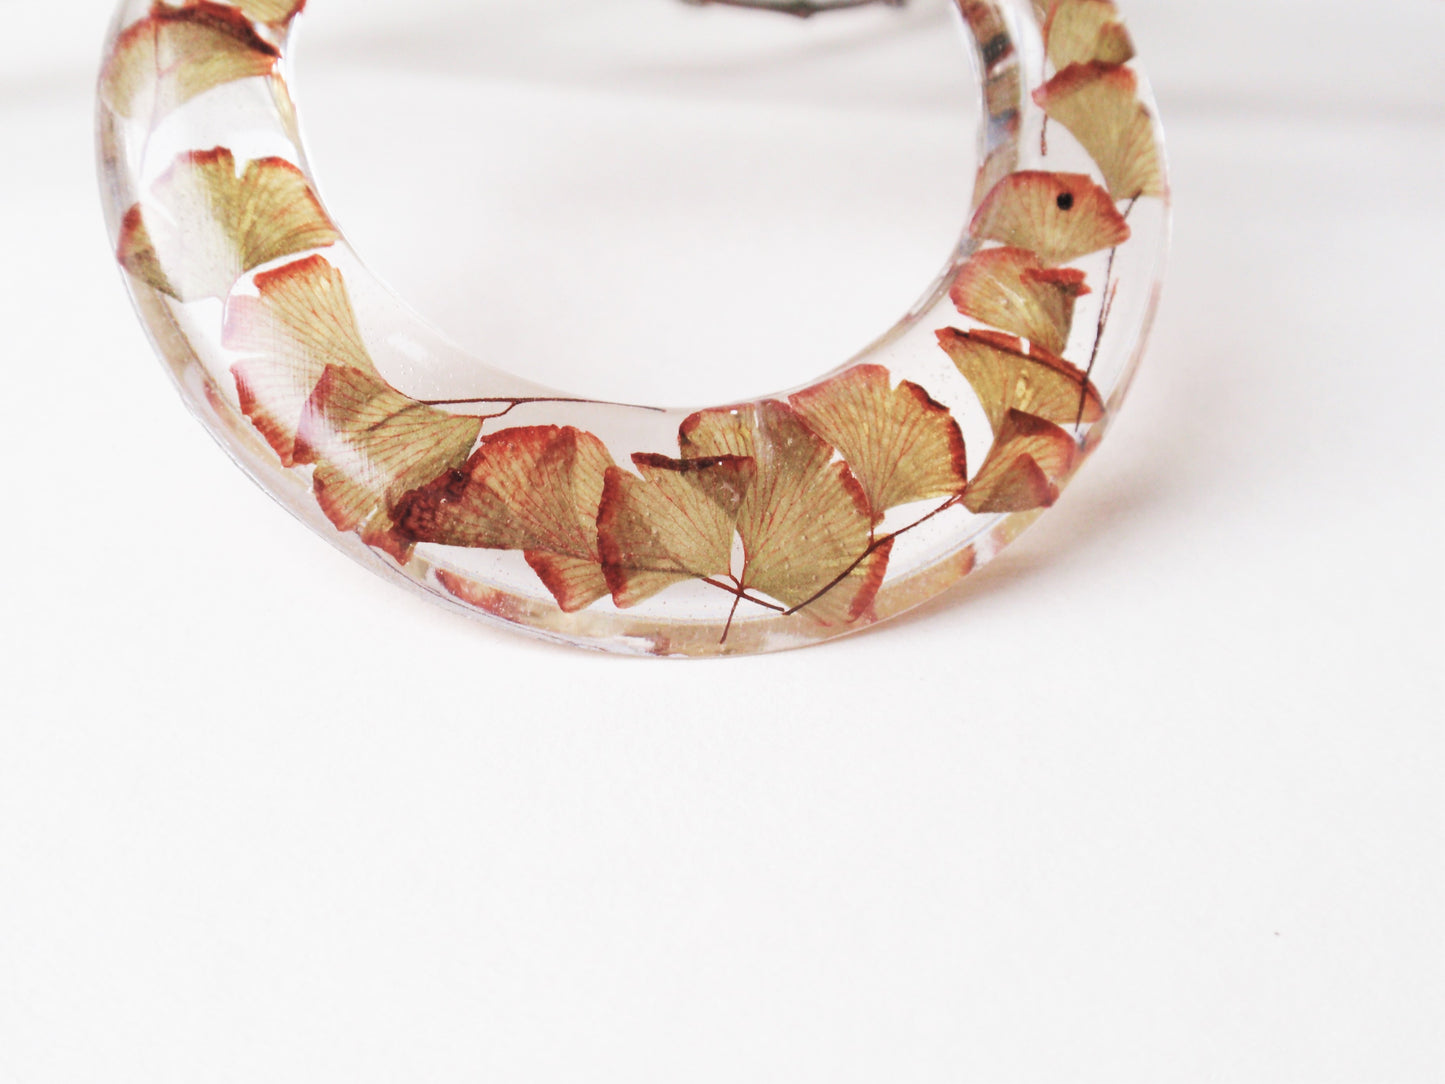 Handmade Maidenhair fern hoop necklace